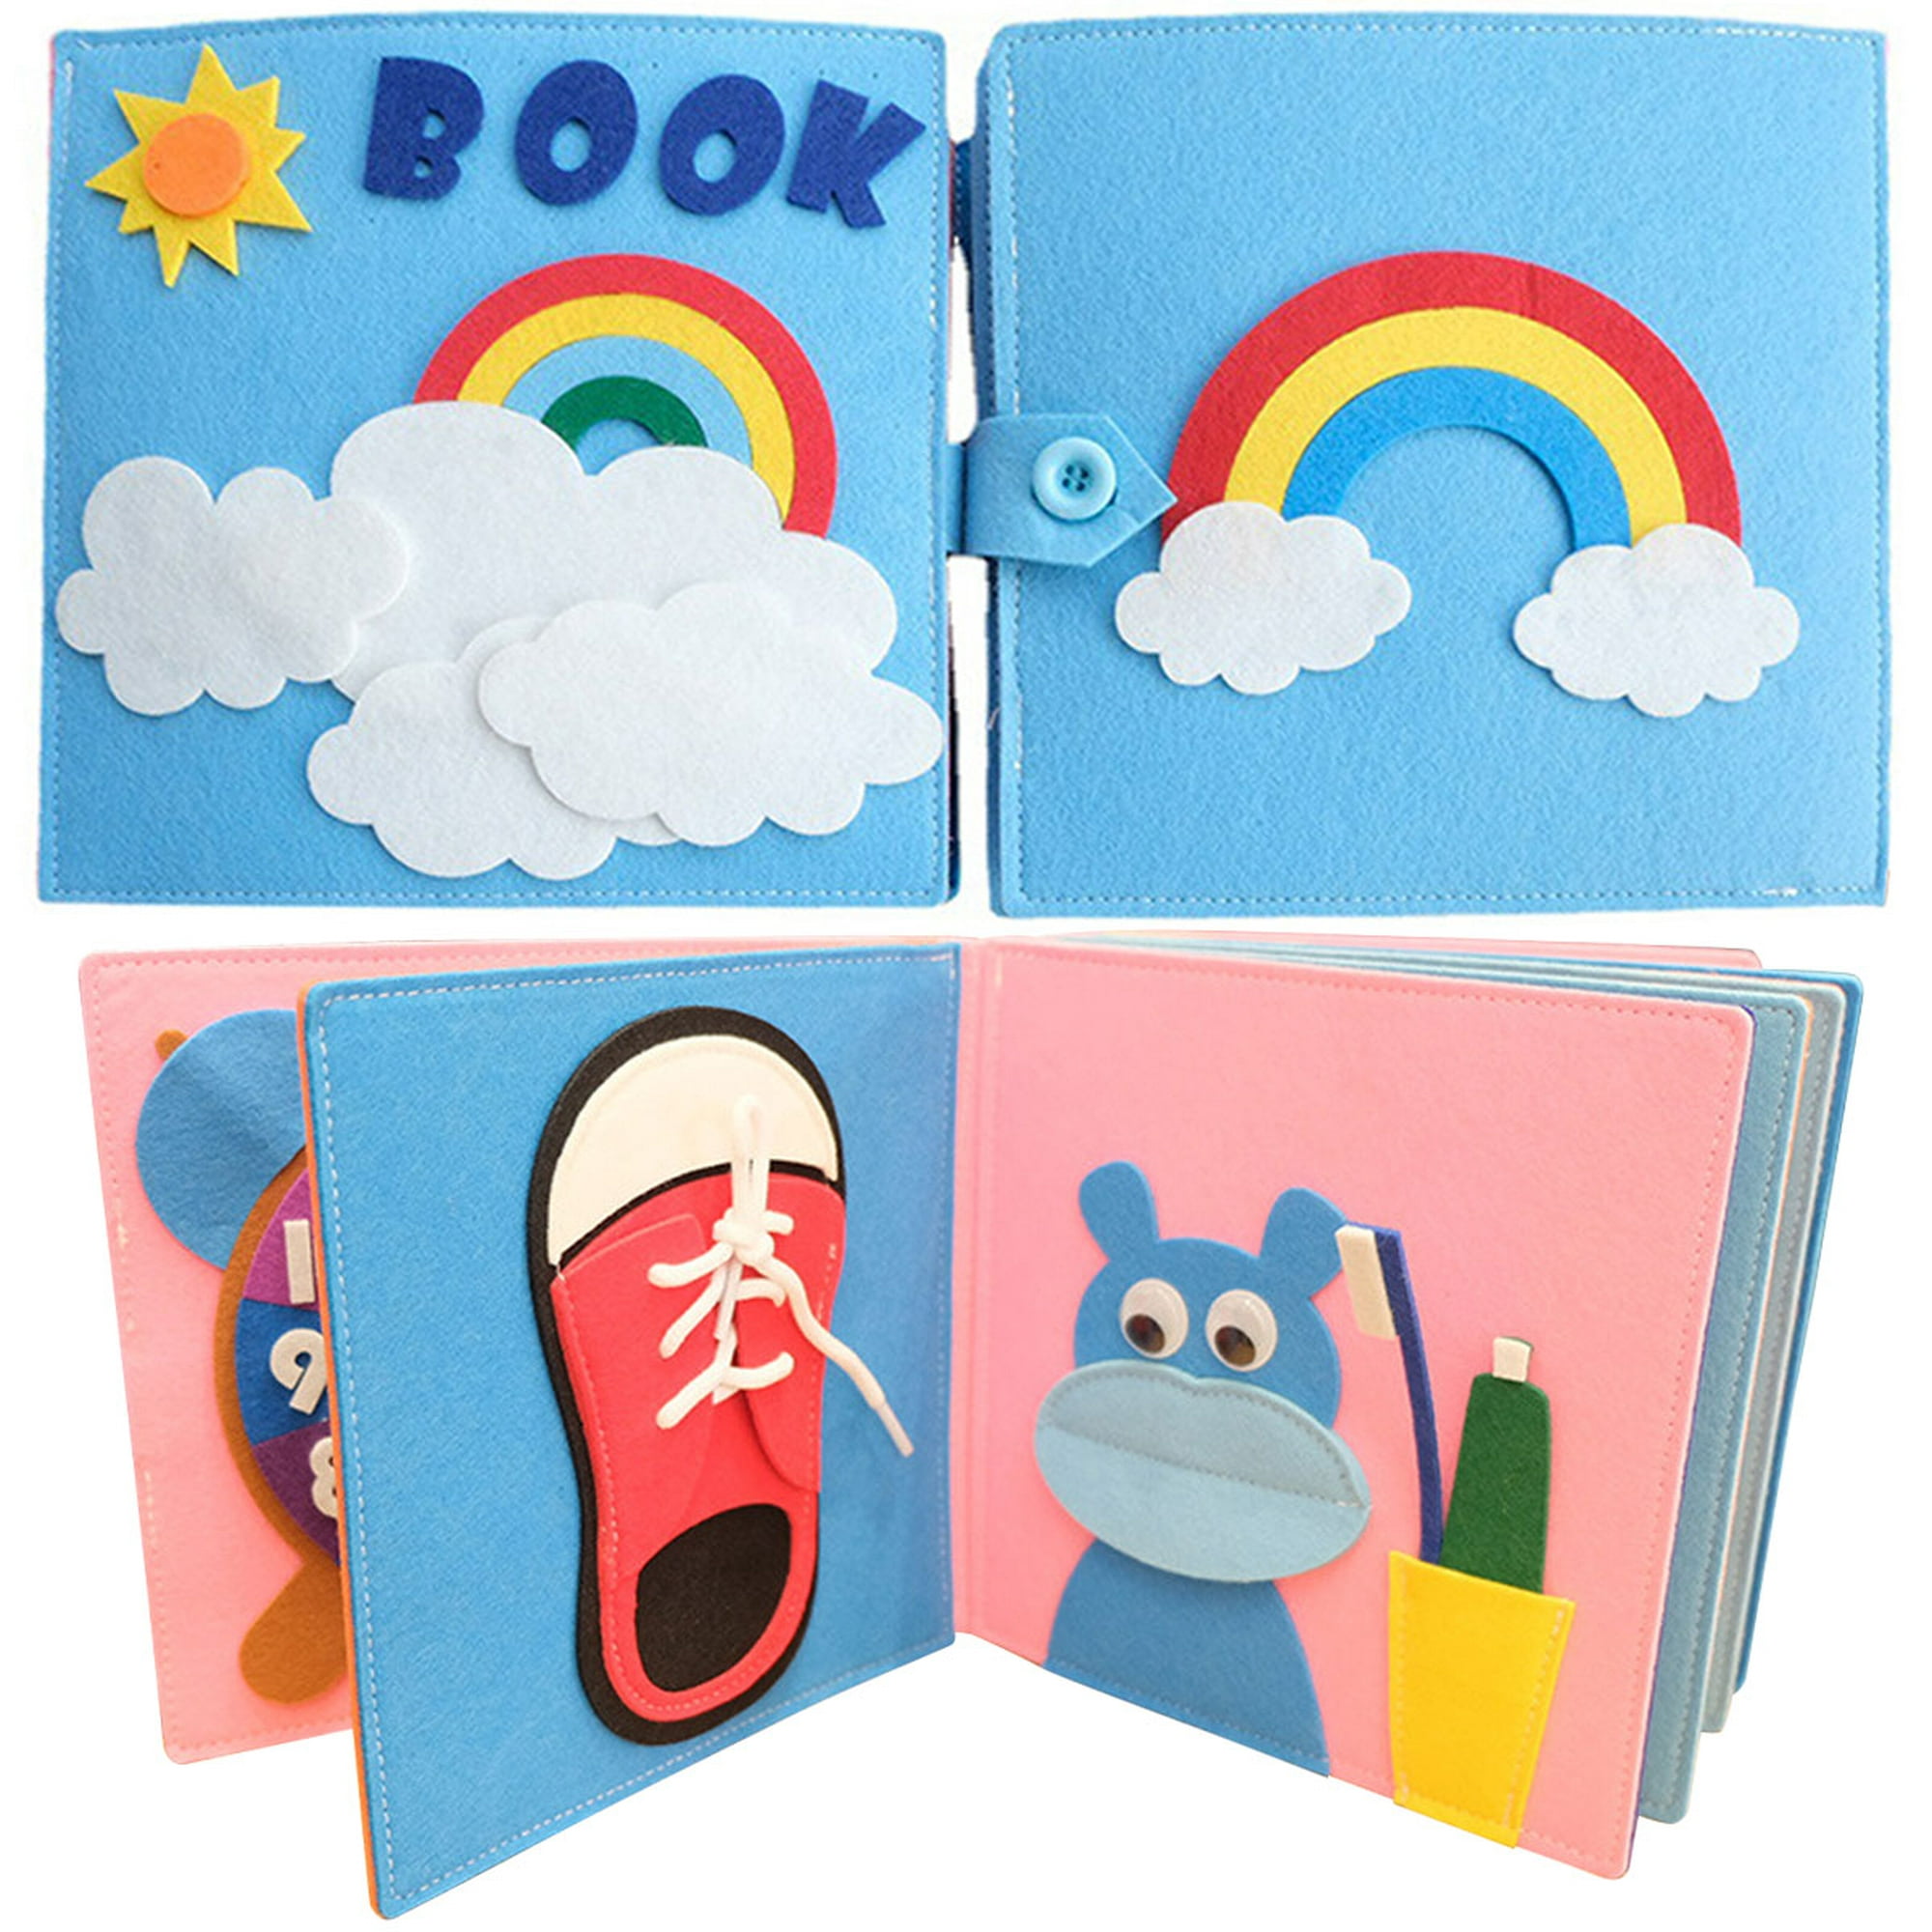 Libro de fieltro colorido para bebé, libro tranquilo y ocupado